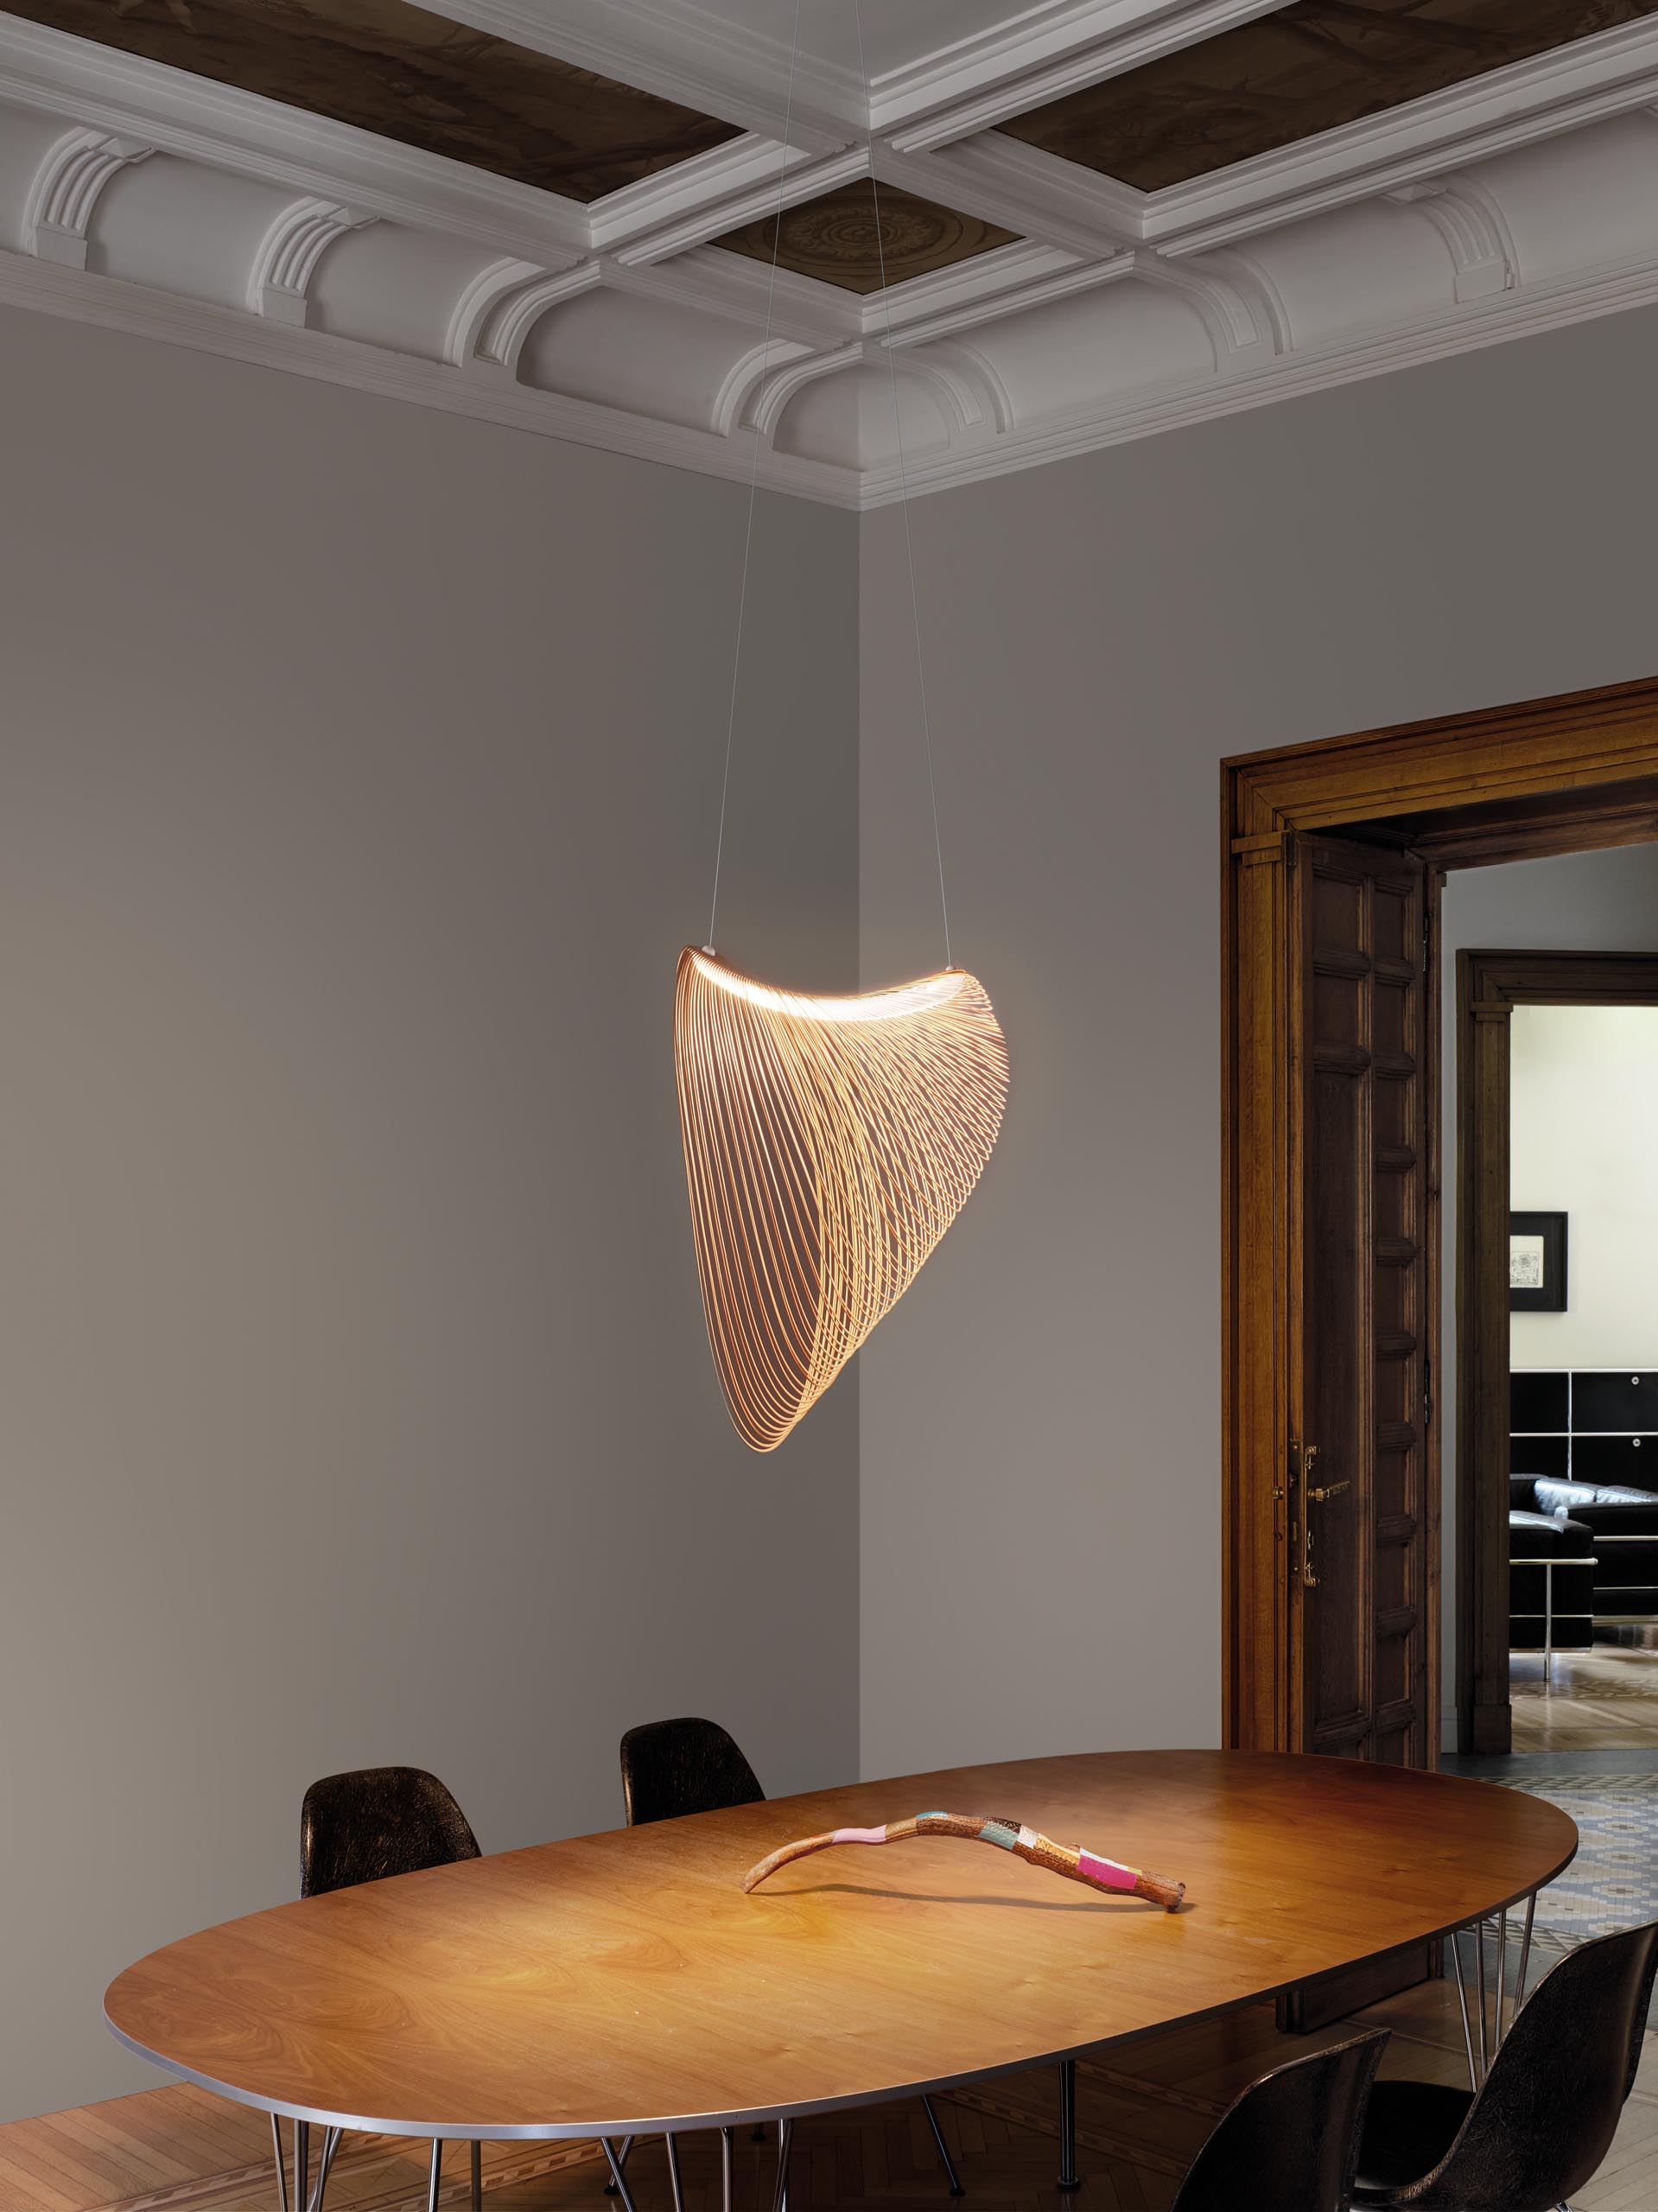 Изящный подвесной светильник из дерева, вырезанного лазером, со светодиодами висит над обеденным столом.